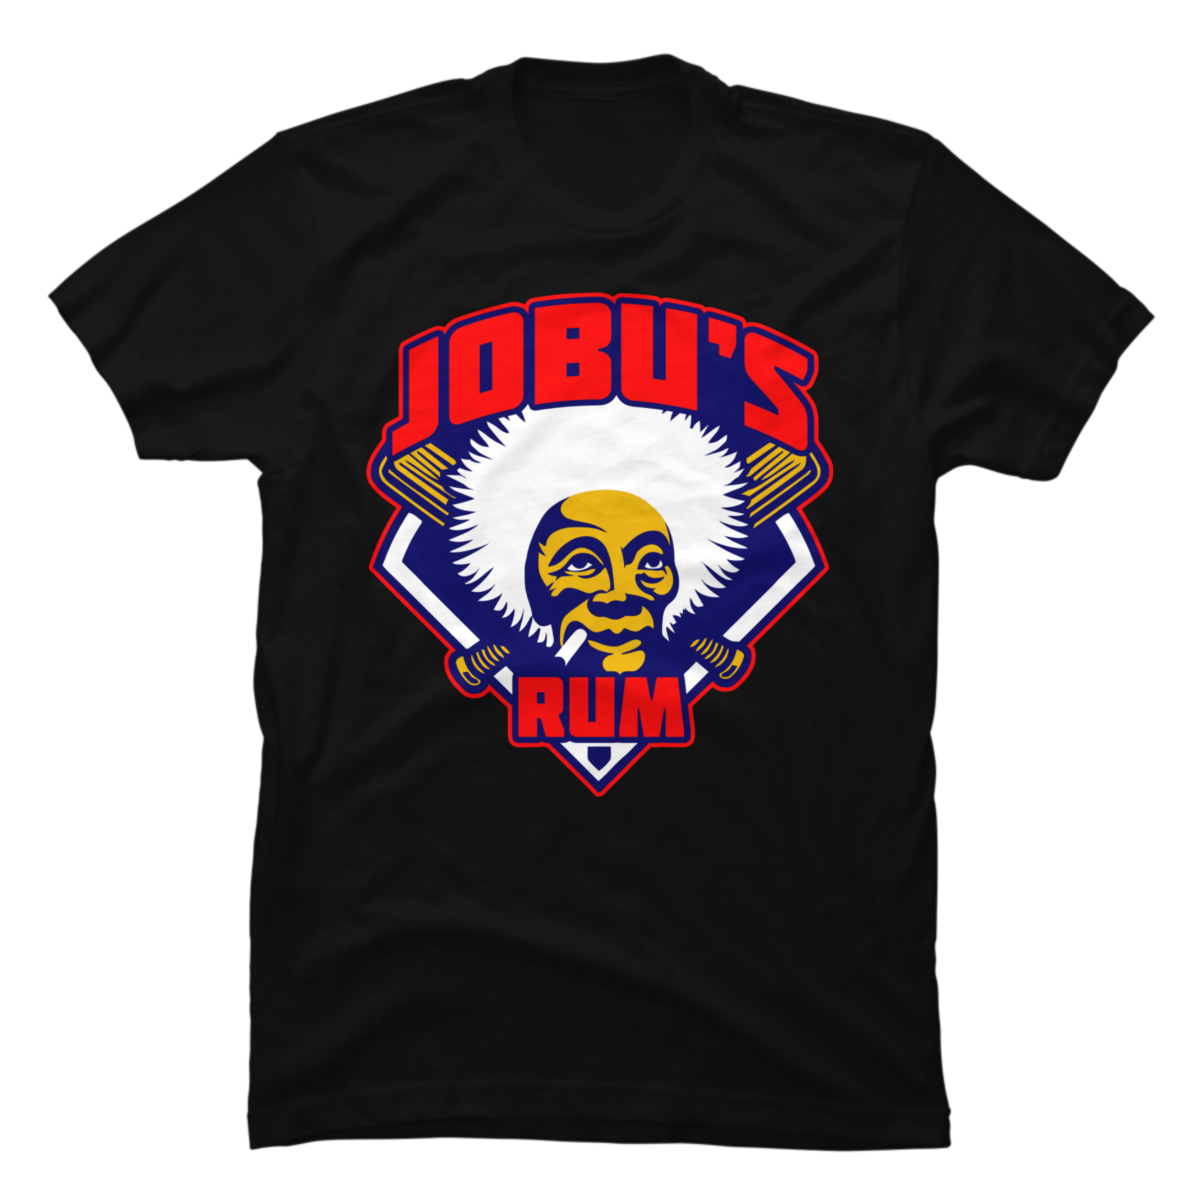 jobu's rum t shirt